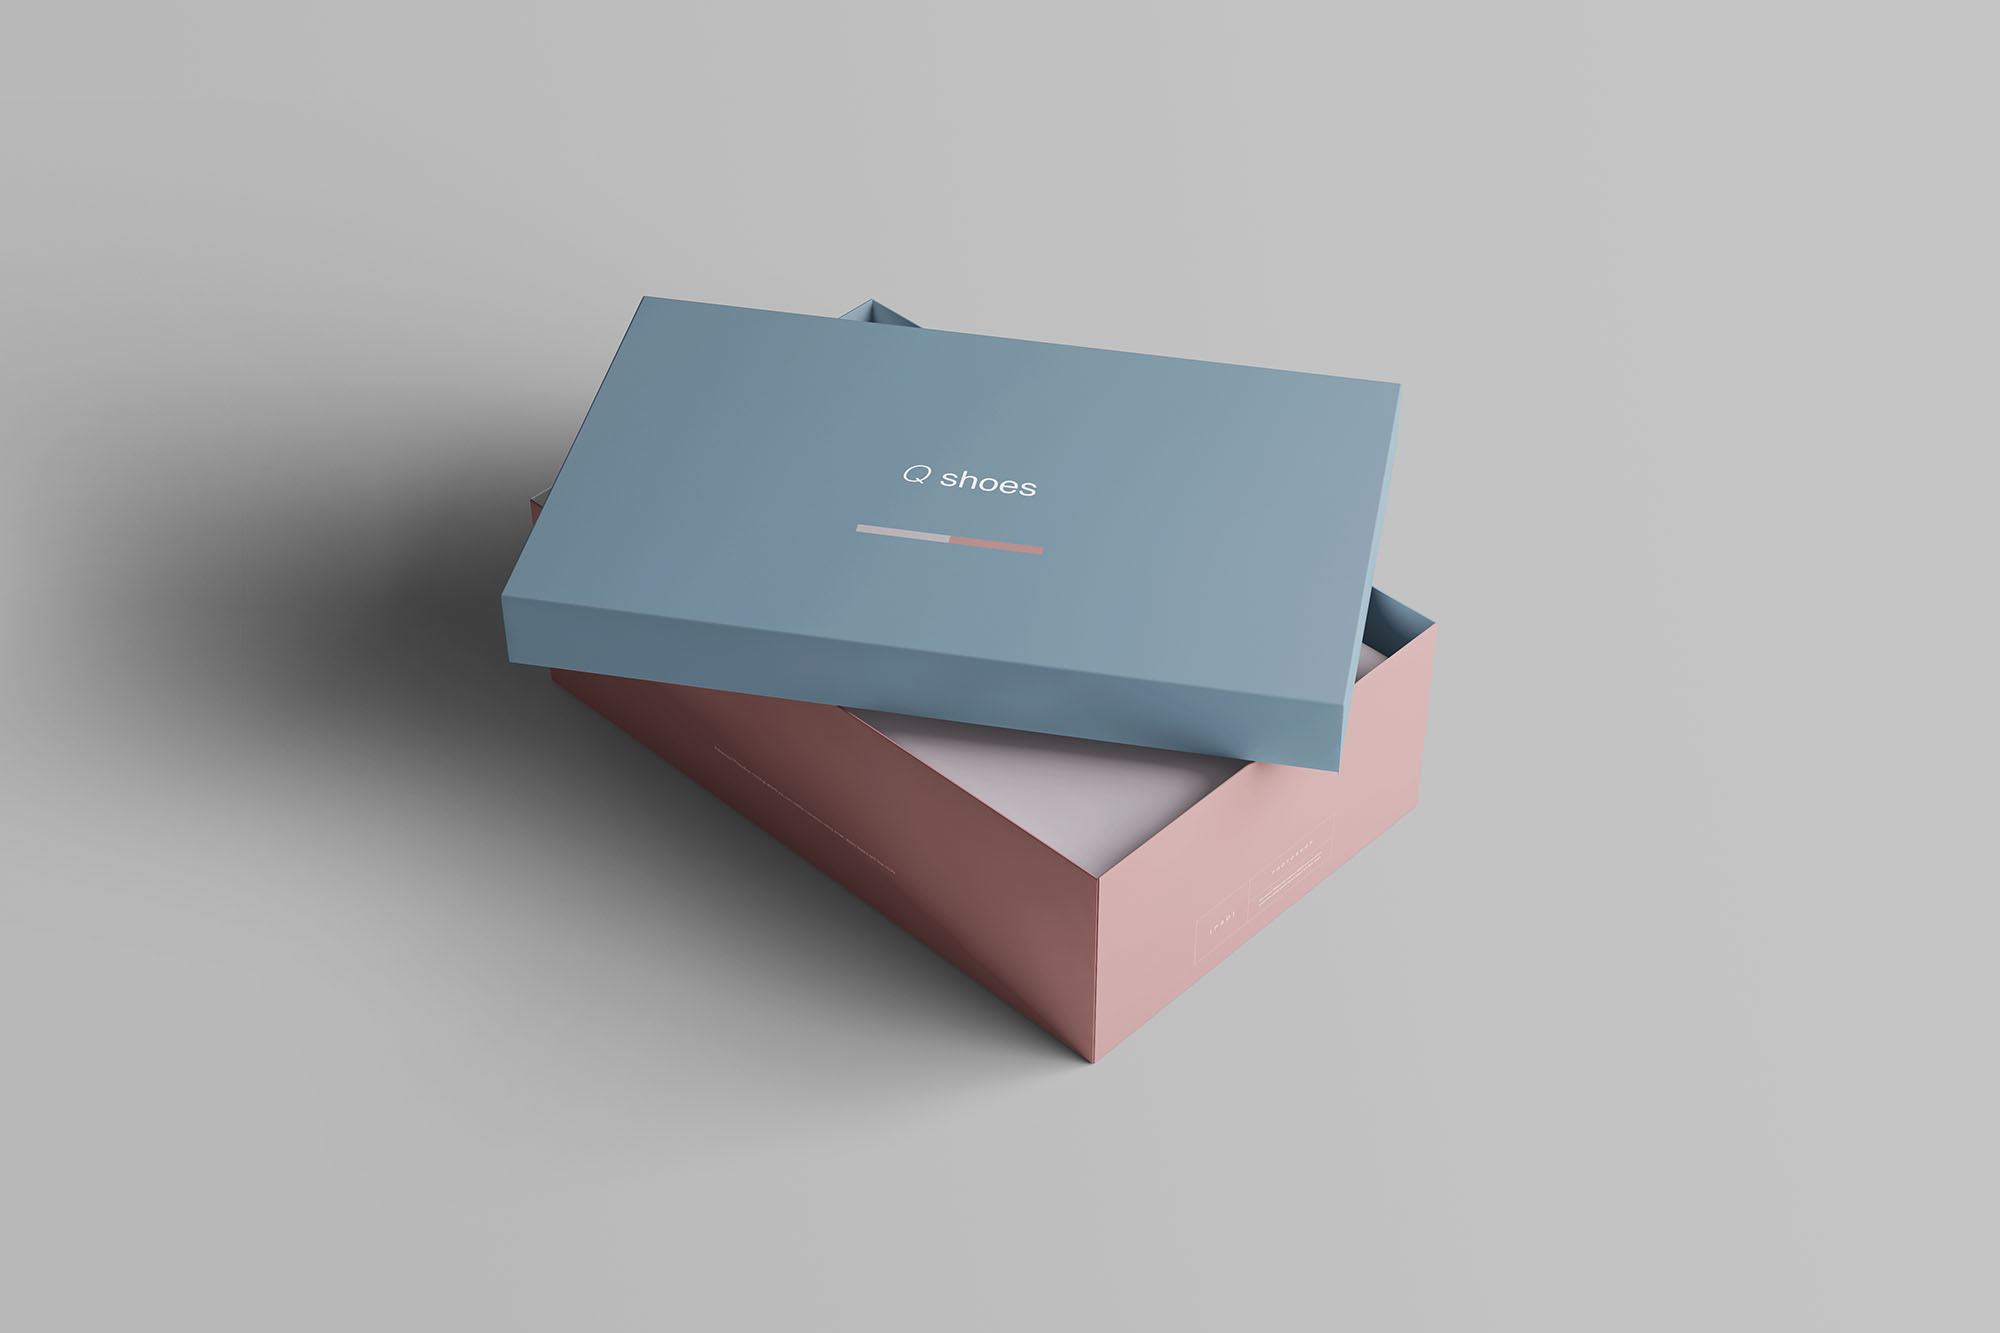 高端女鞋鞋盒外观设计图非凡图库精选模板 Shoe Box Mockup插图(3)